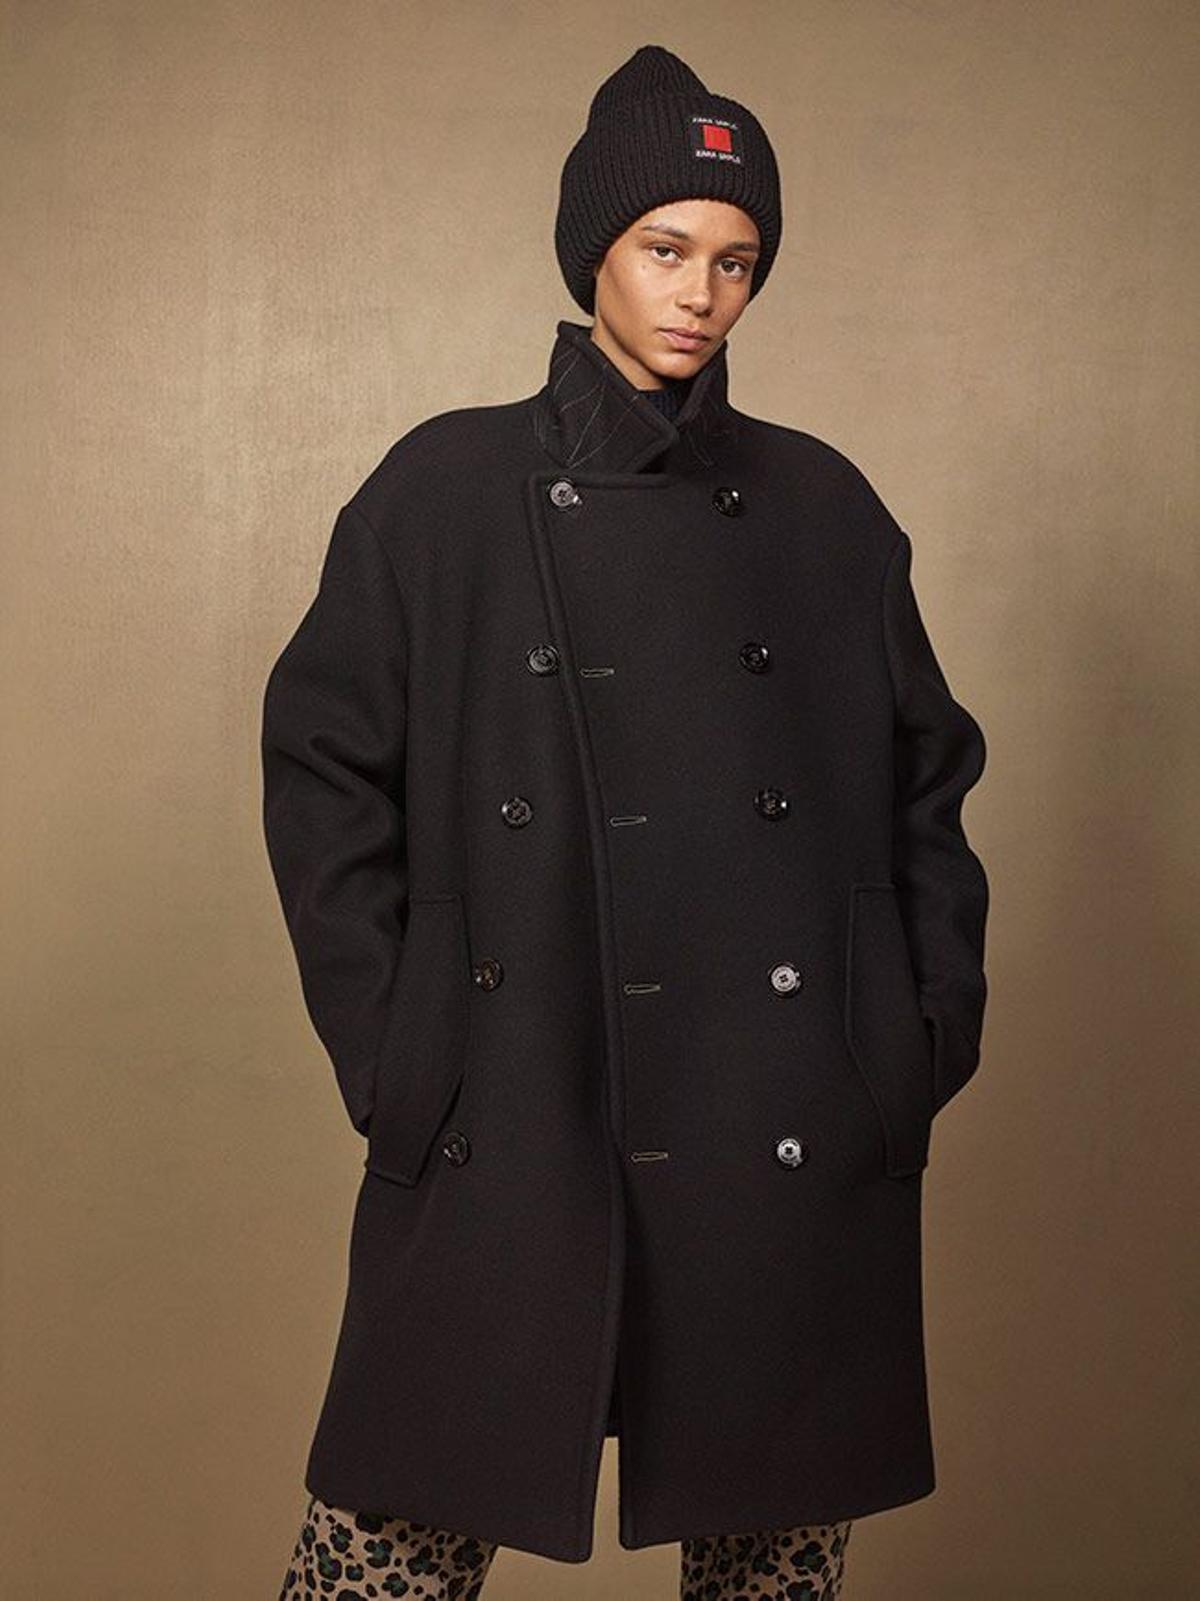 Zara SRPLS, chaqueta oversize de Zara